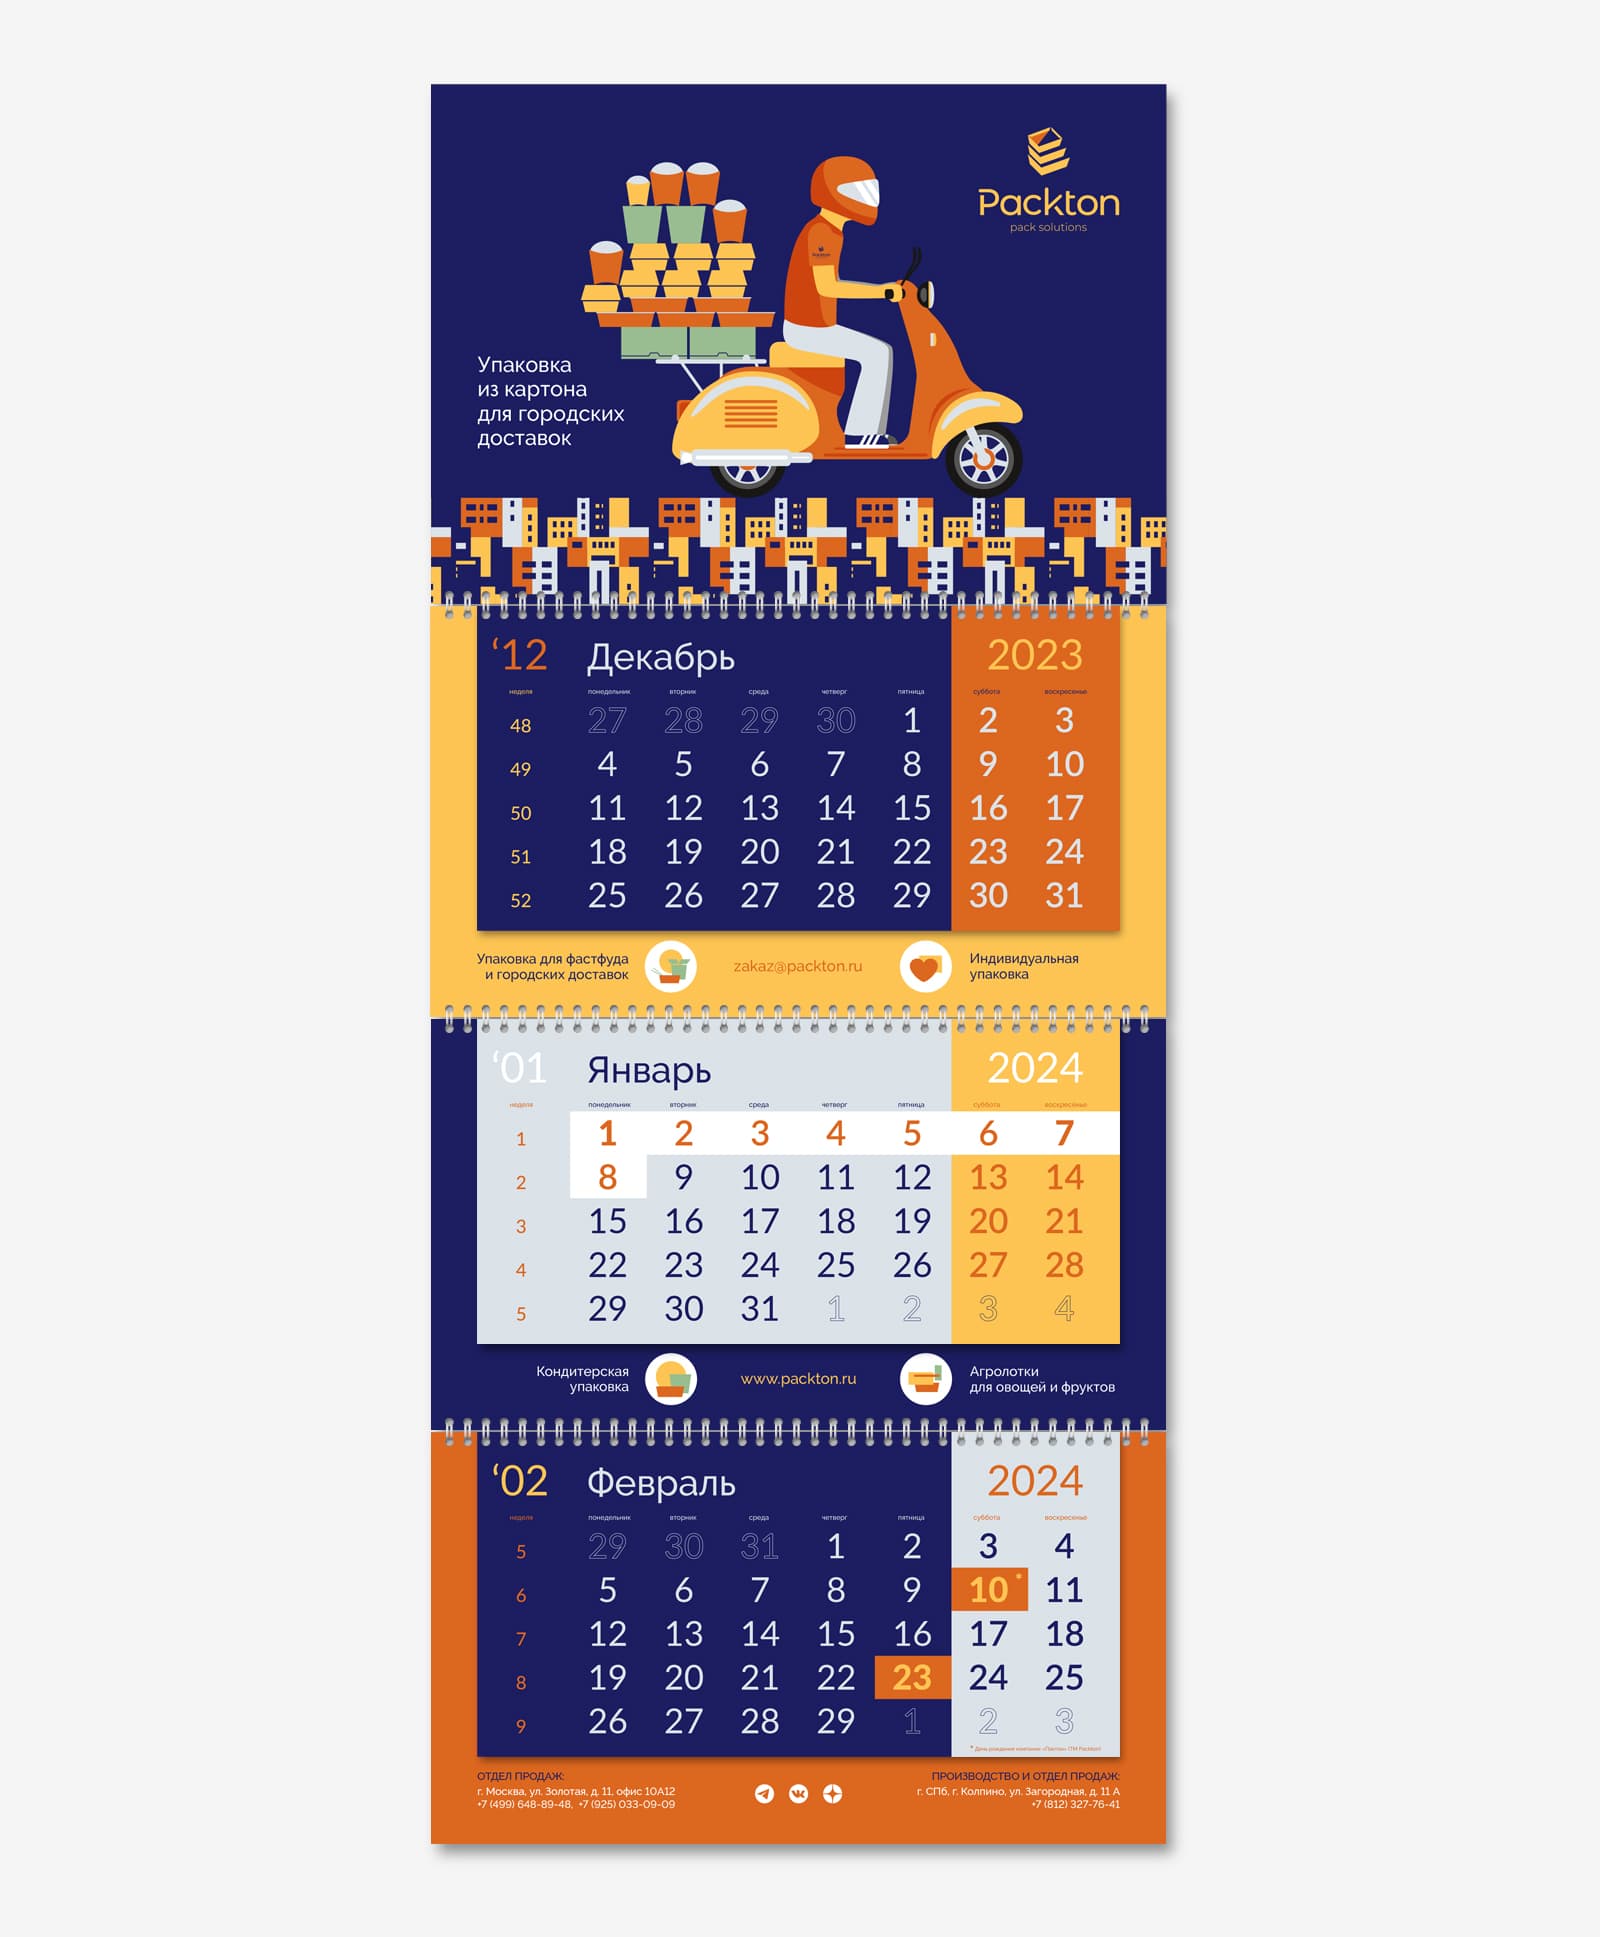 Разработали дизайн корпоративного календаря Трио для компании Packton на 2024 год